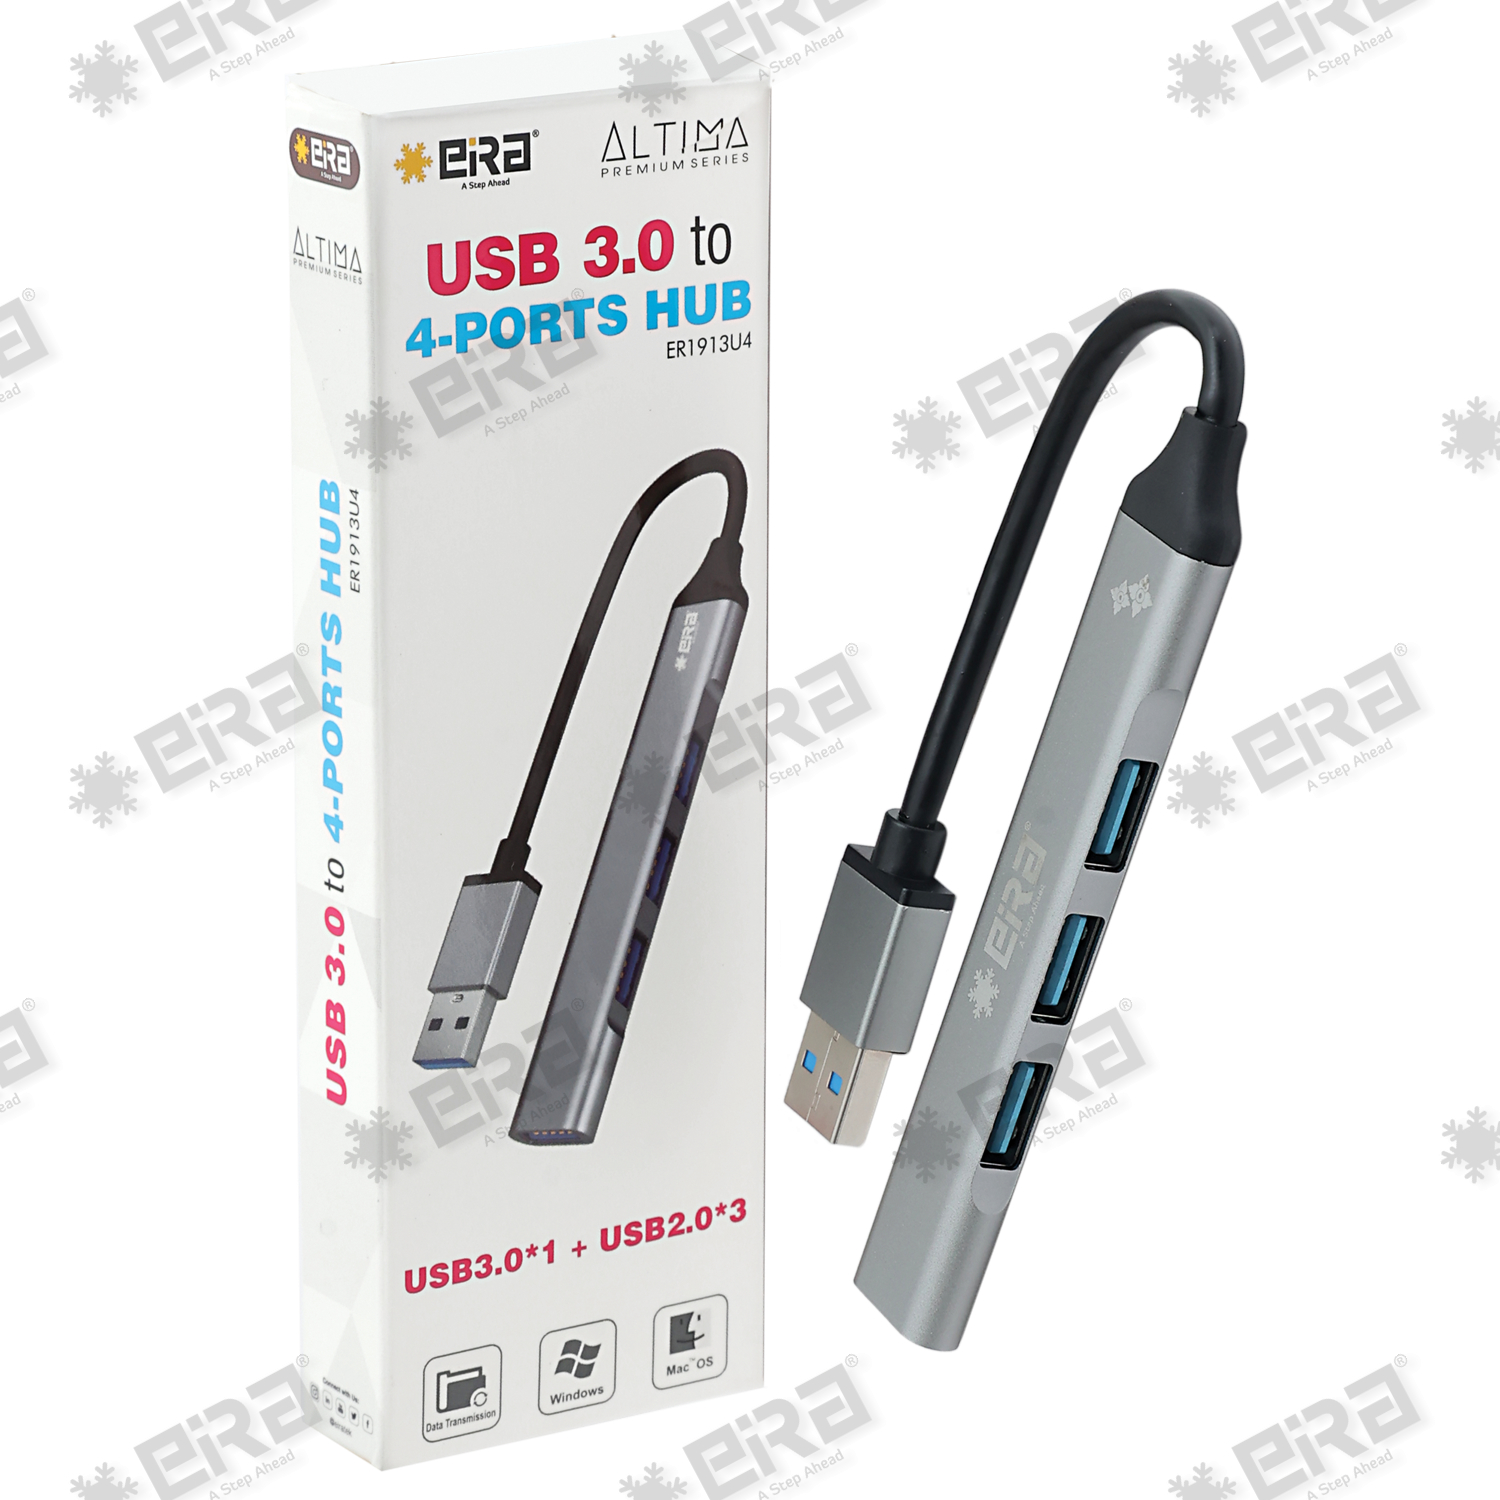 USB 3.0 to 4-Ports Hub (USB3.0*1 + USB2.0*3)